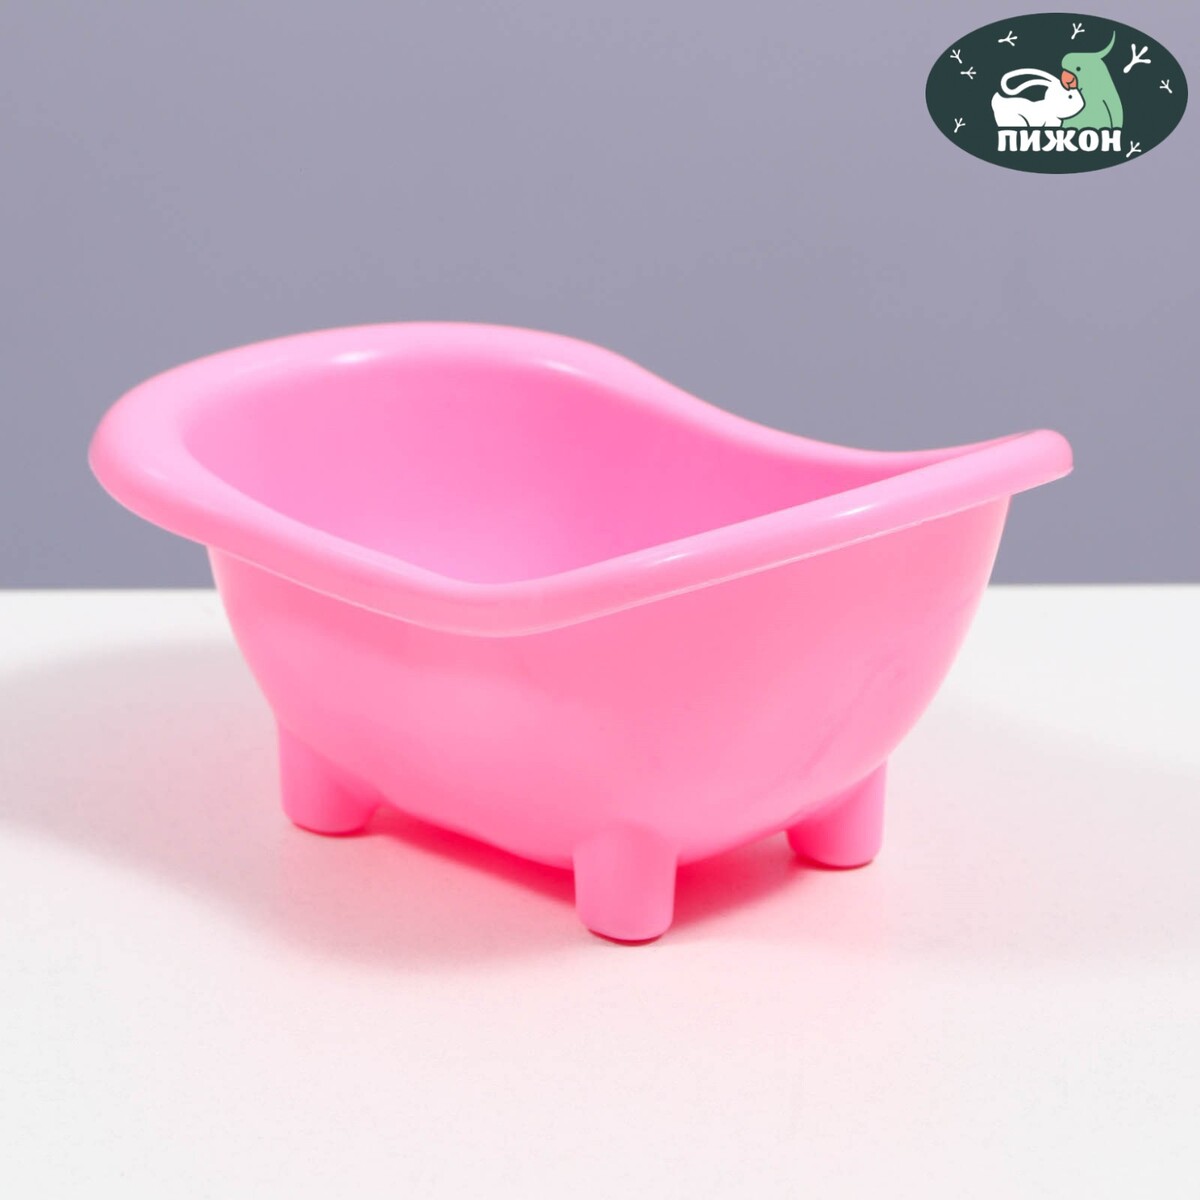 Ванночка для хомяков, 15,5 х 8,5 см, розовая как домик искал хозяина